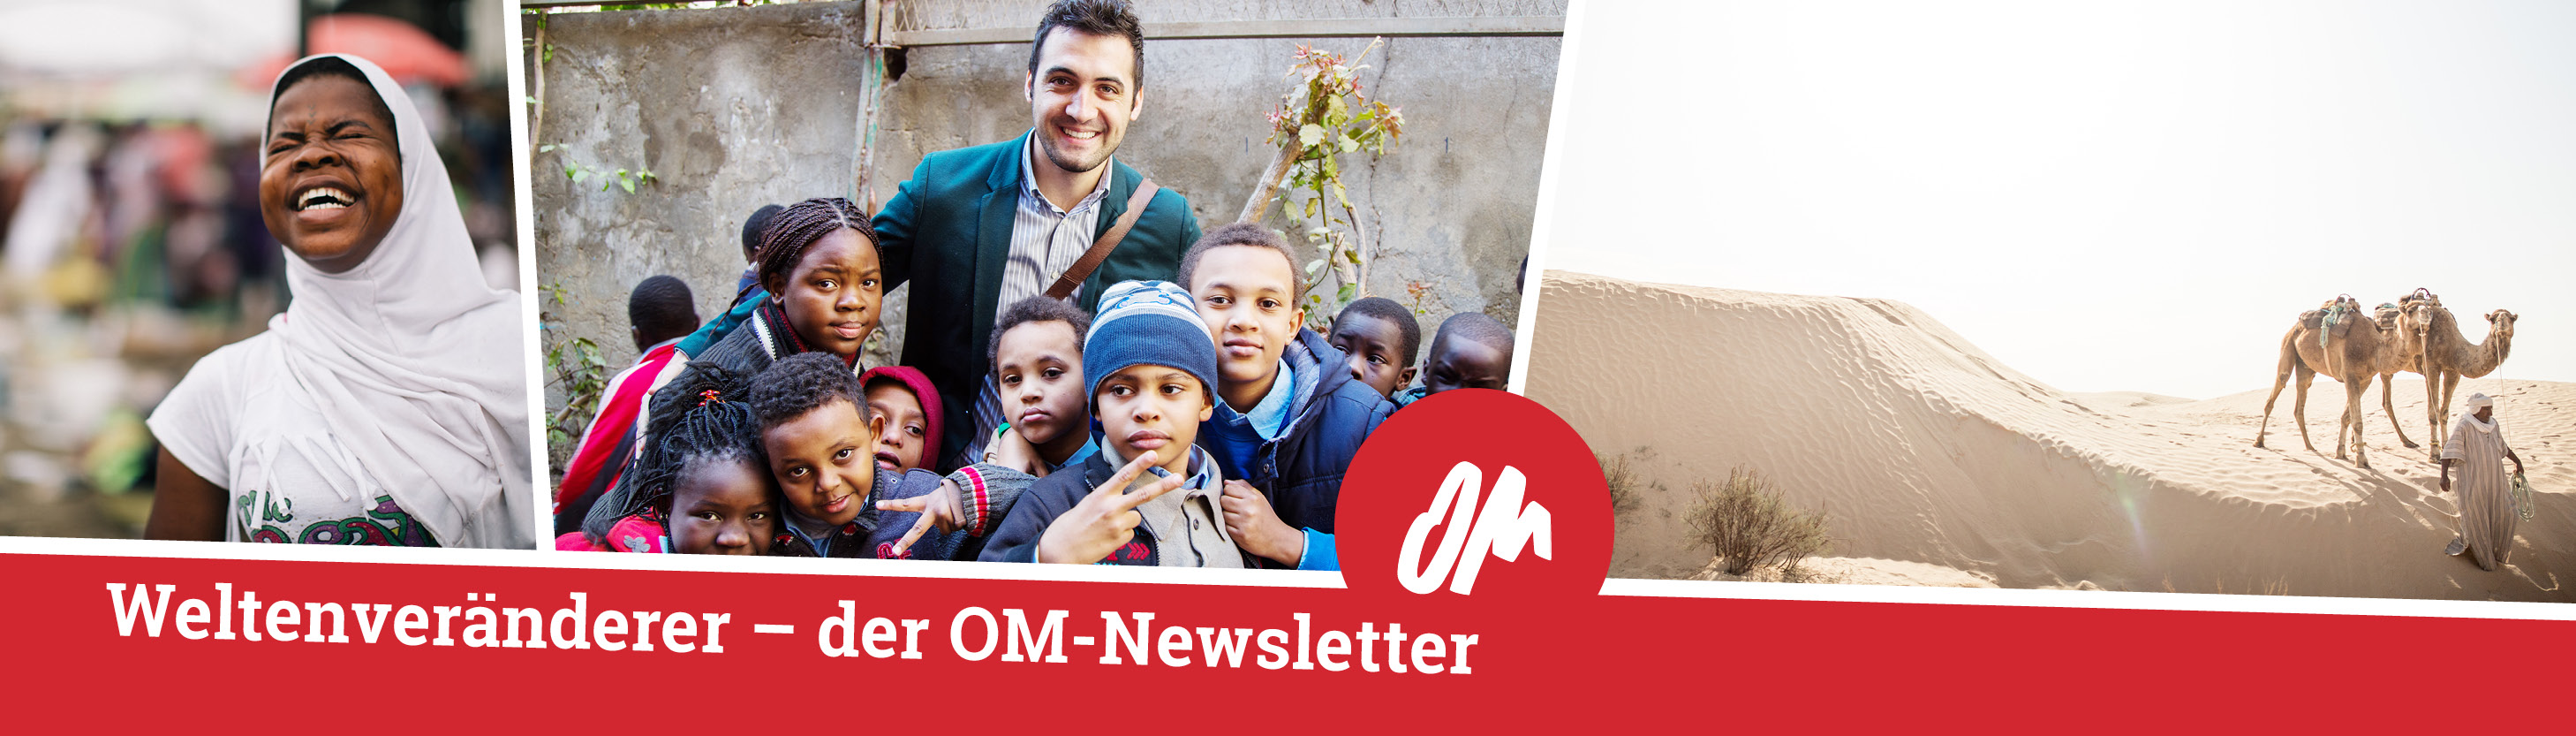 Freudige Menschen – Einladung den OM-Newsletter #Weltenveränderer zu abonnieren